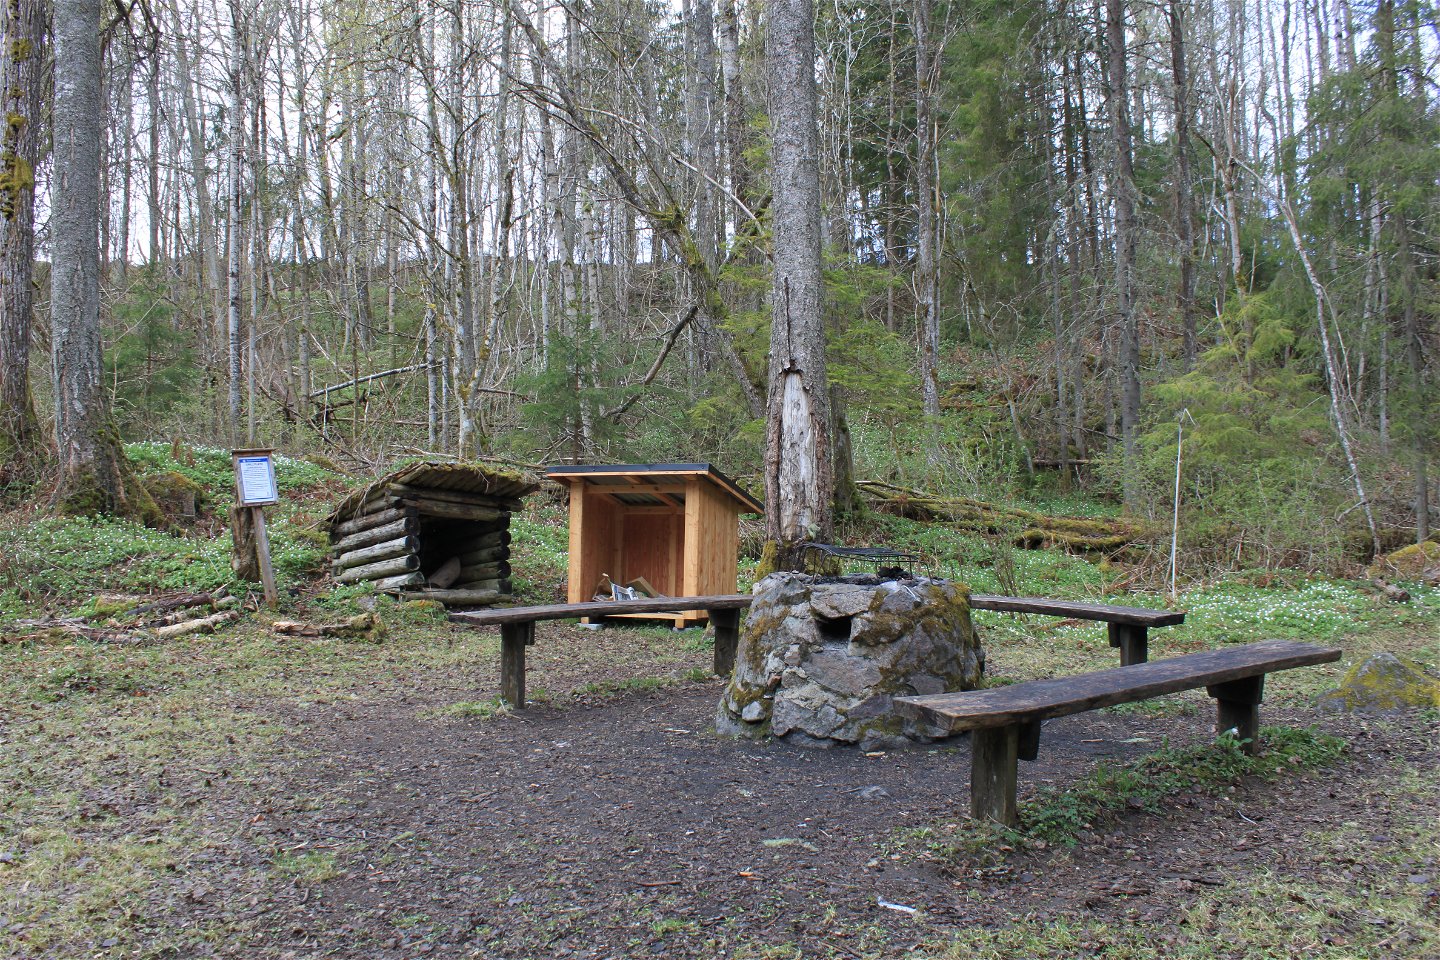 På en öppen yta i skogen står en grillplats med tre sittbänkar runtom. Bredvid finns mindre vedförråd och en informationsskylt. 